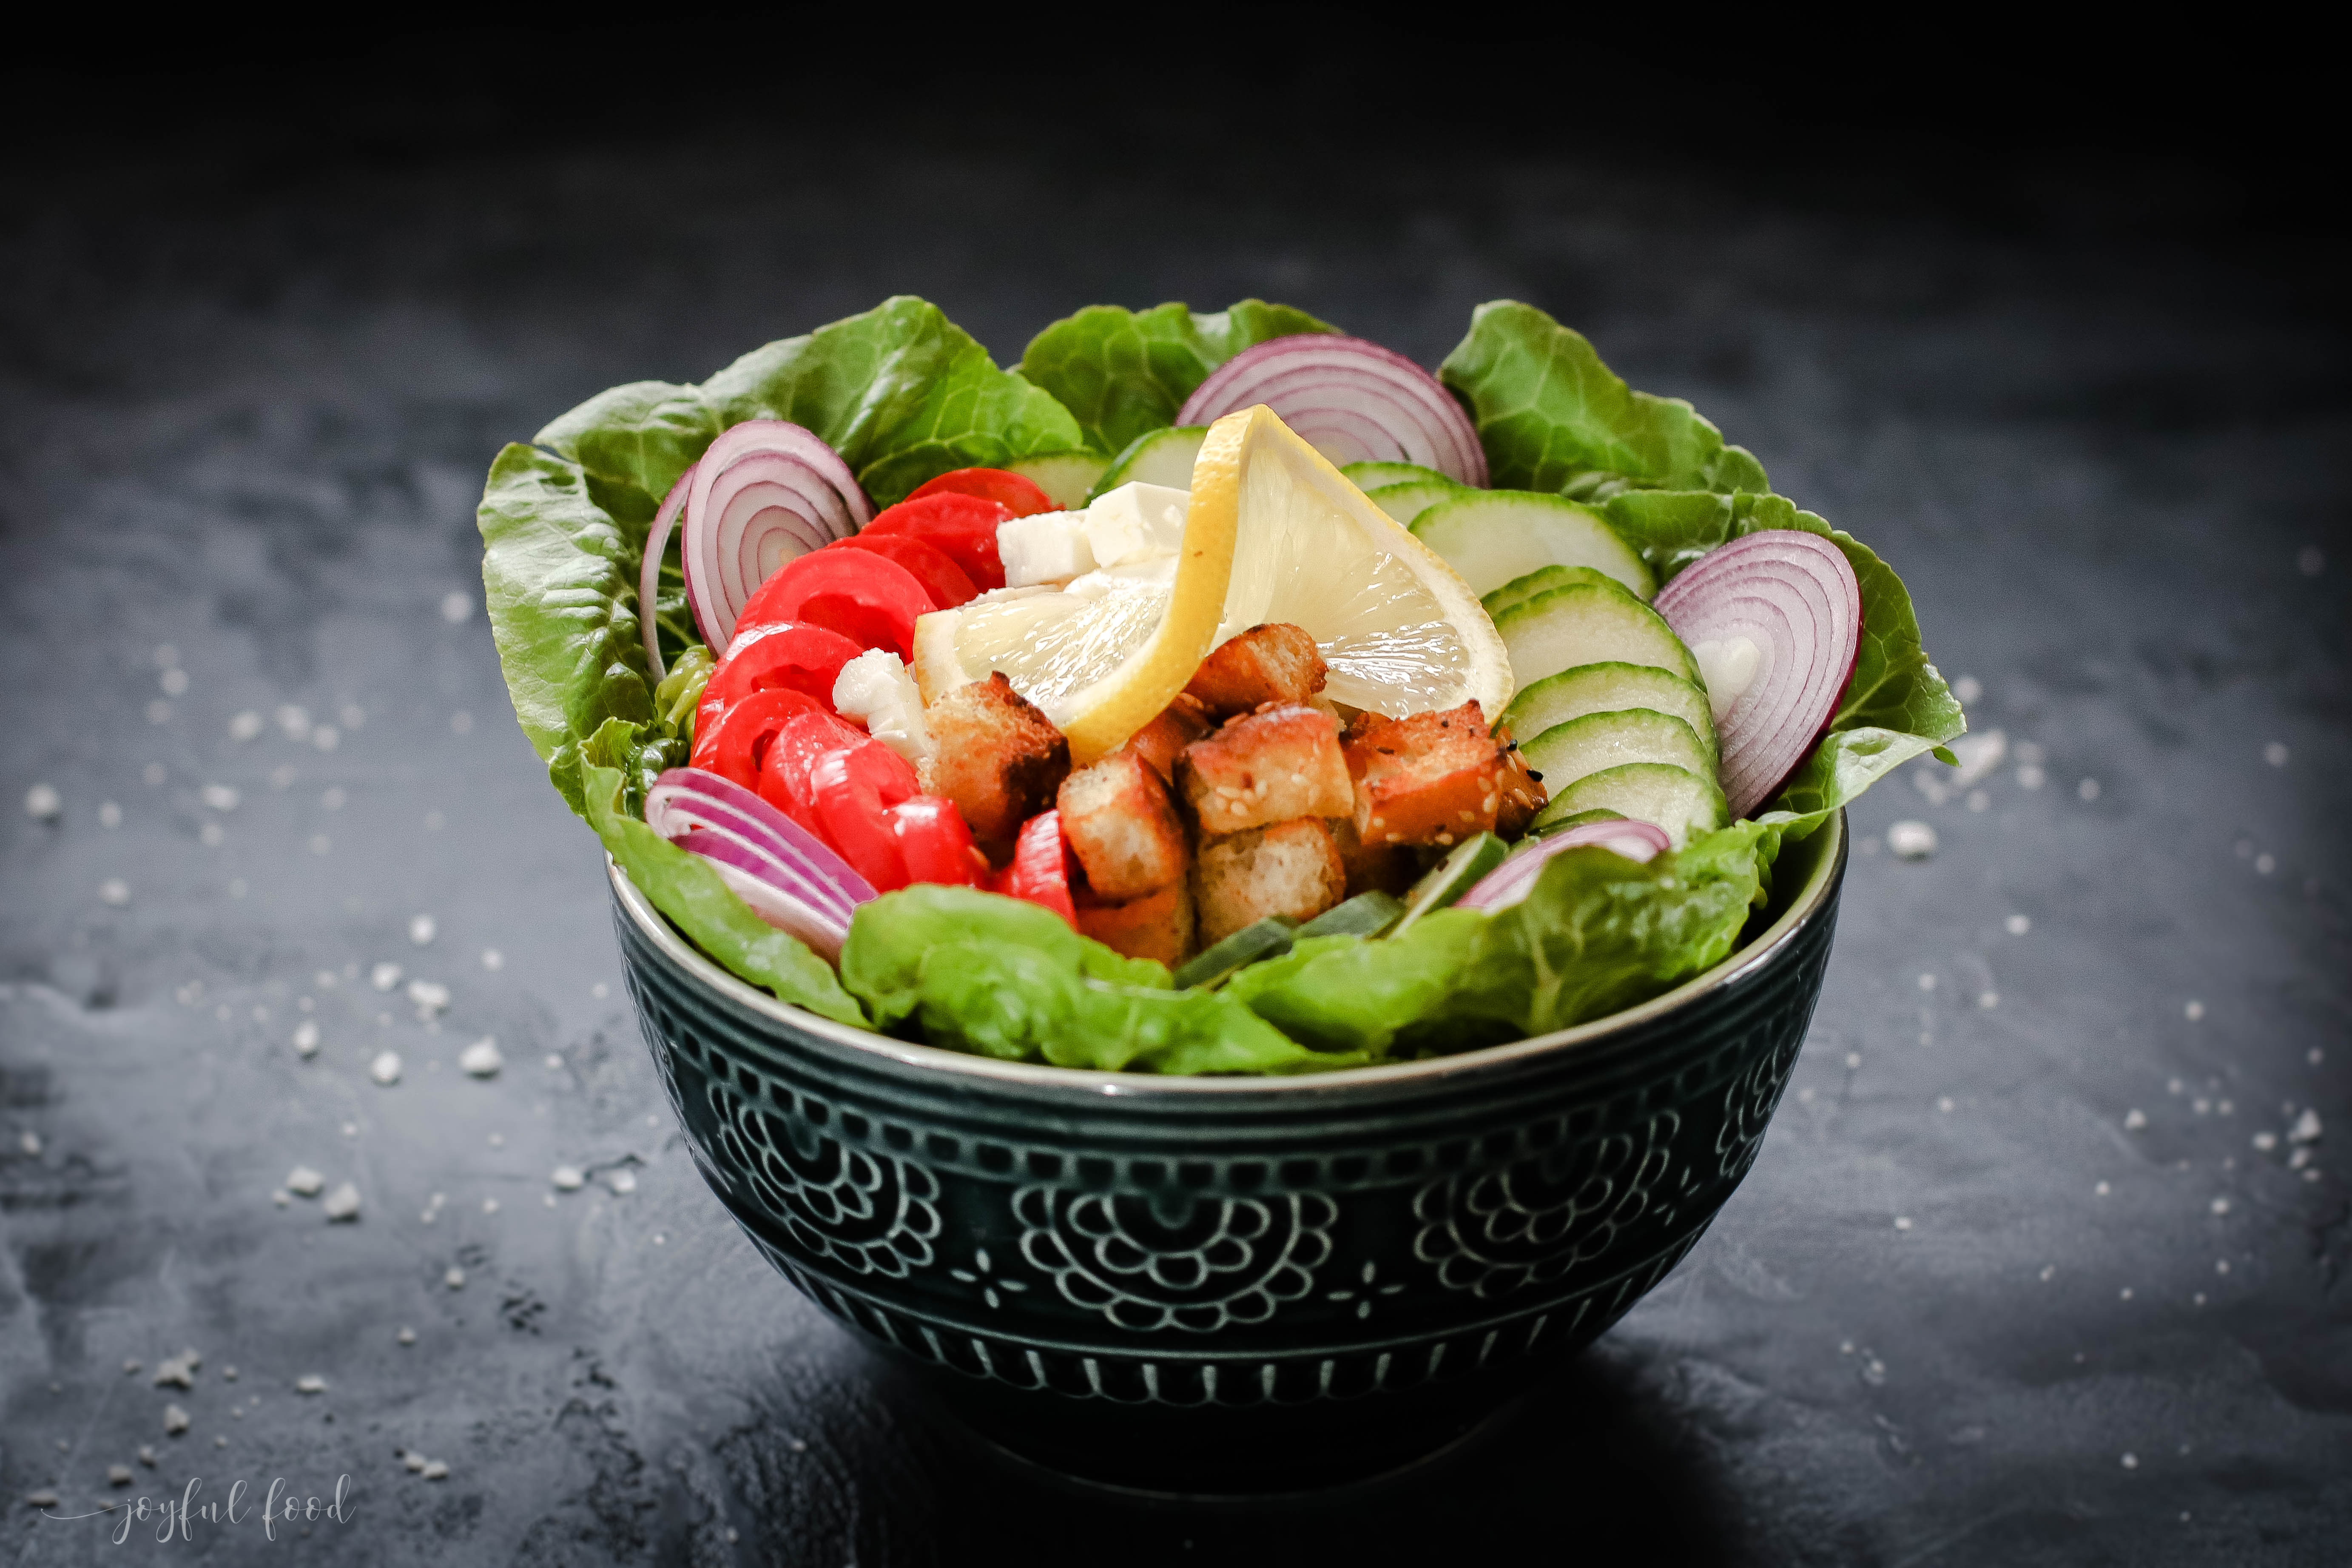 Griechische Salat Bowl mit knusprigen Pita Bites | Joyful Food